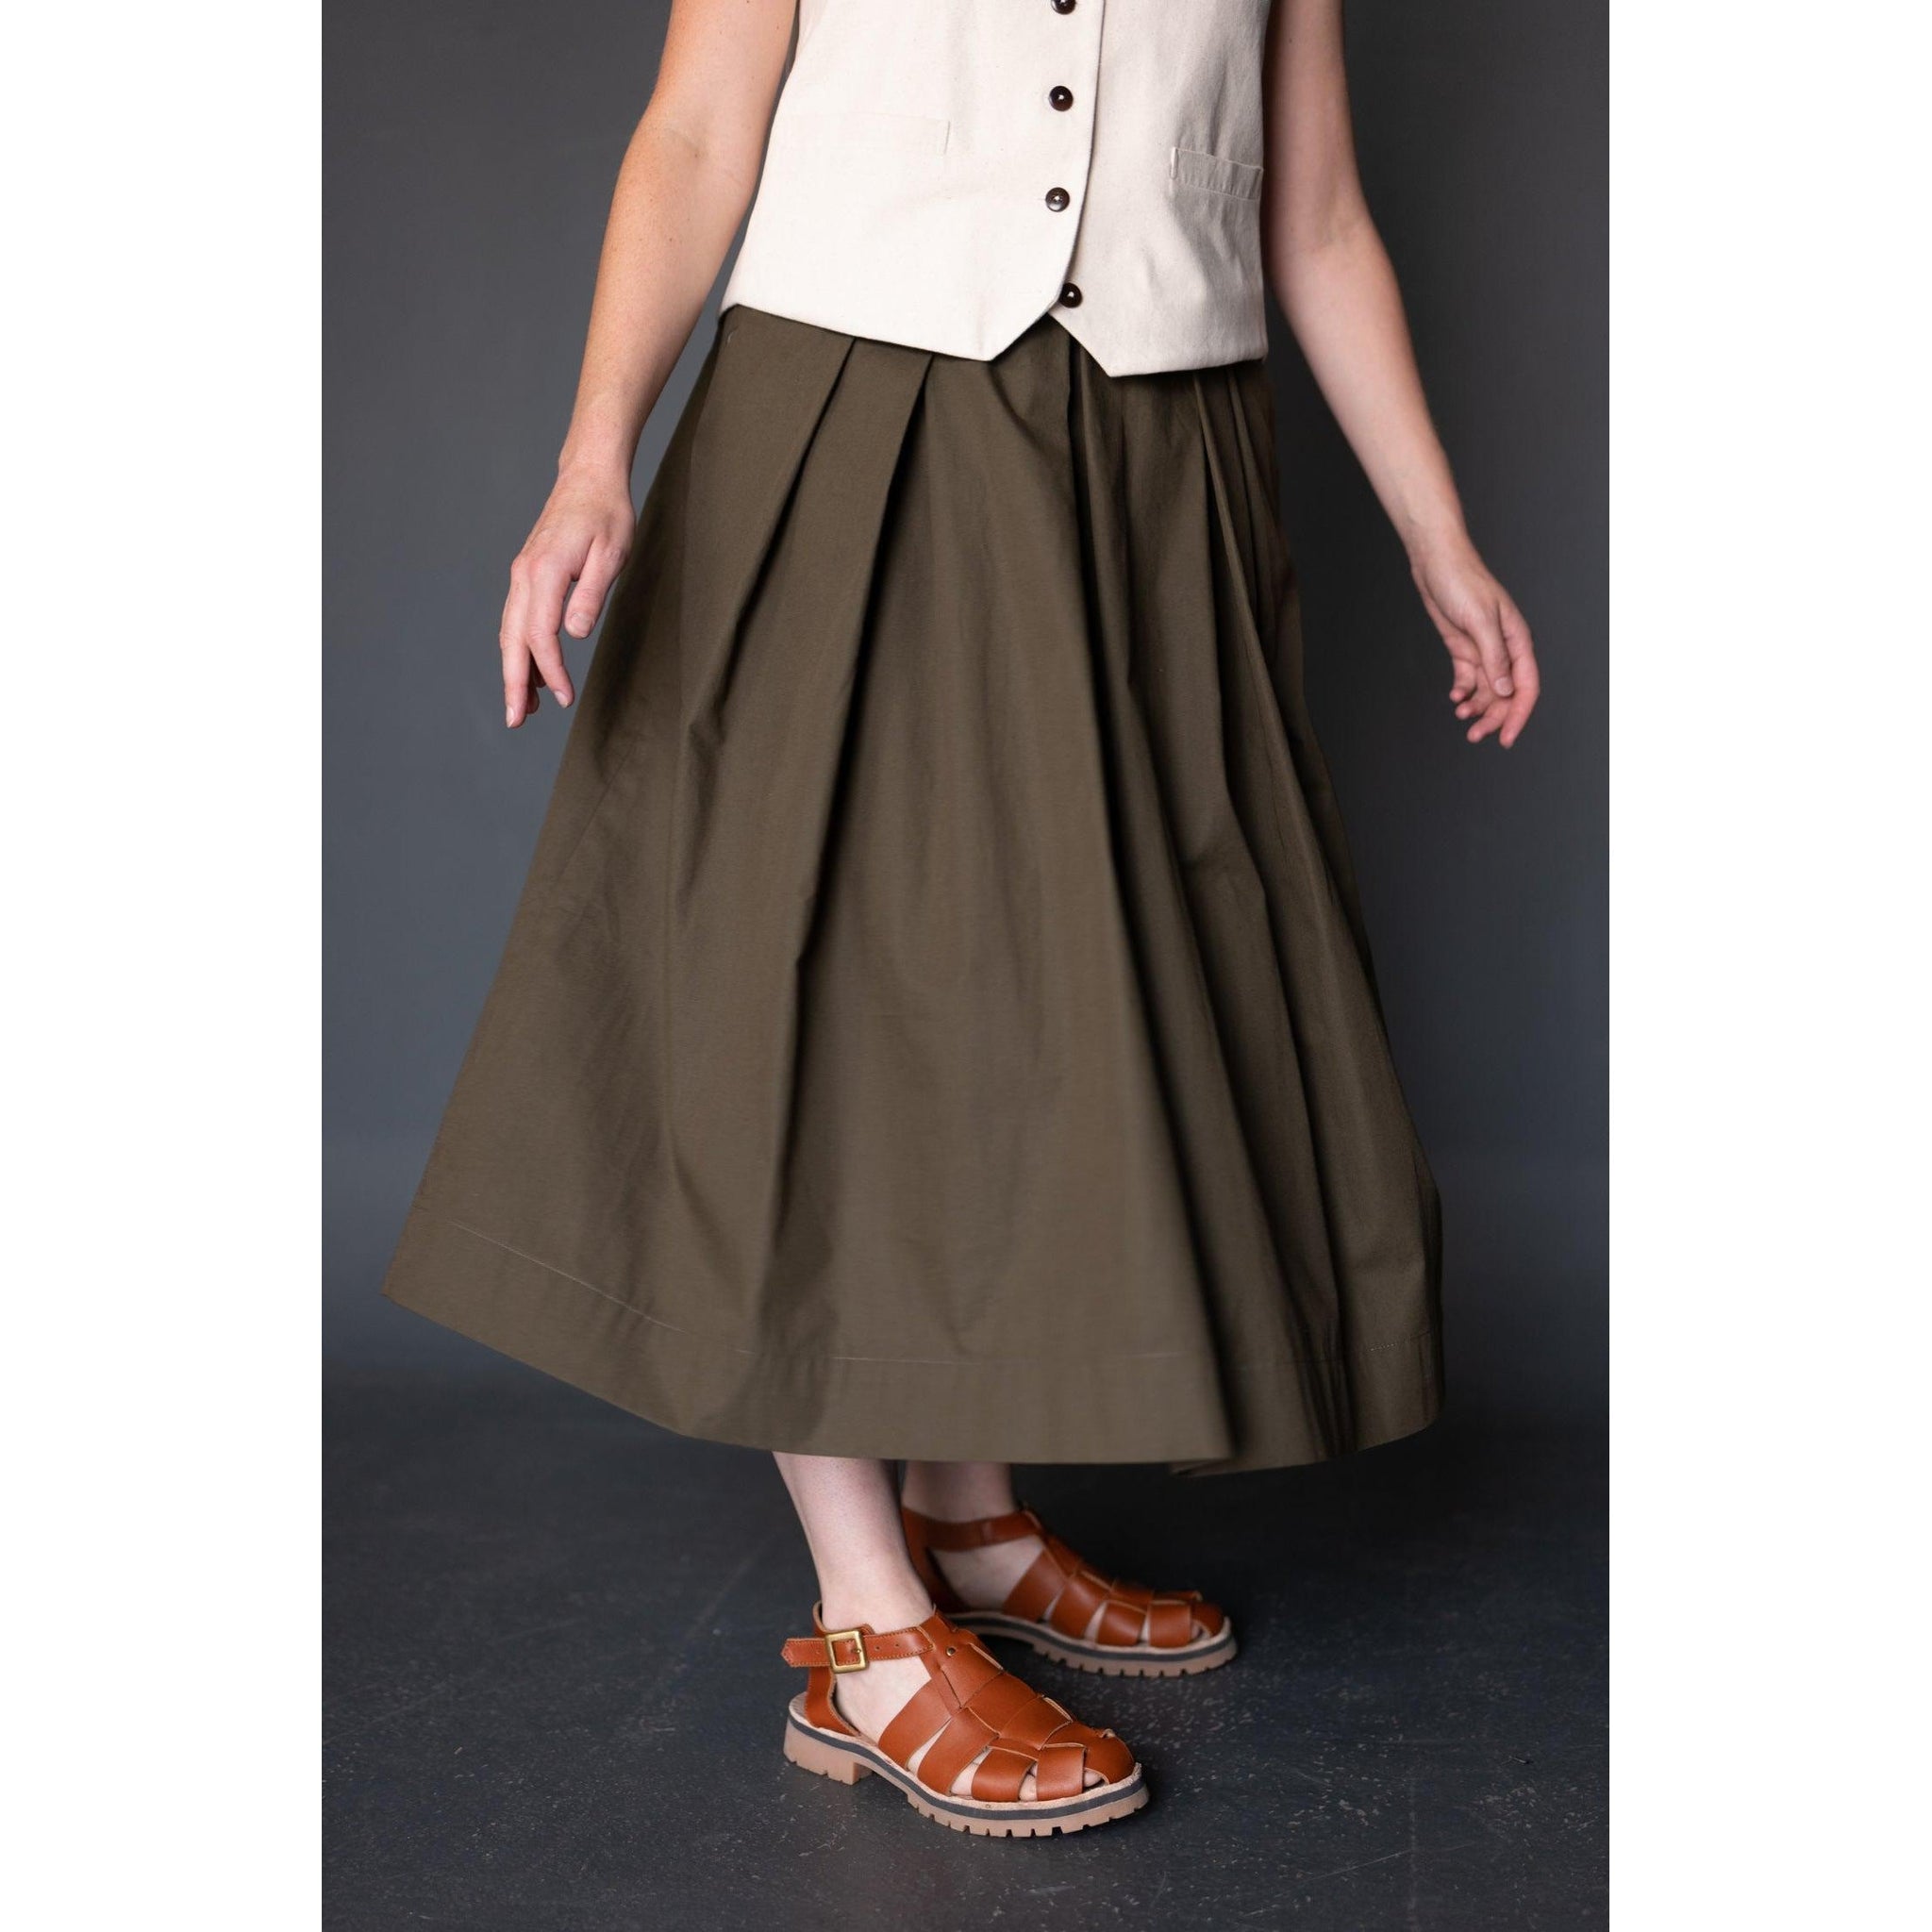 Shepherd Skirt Pattern